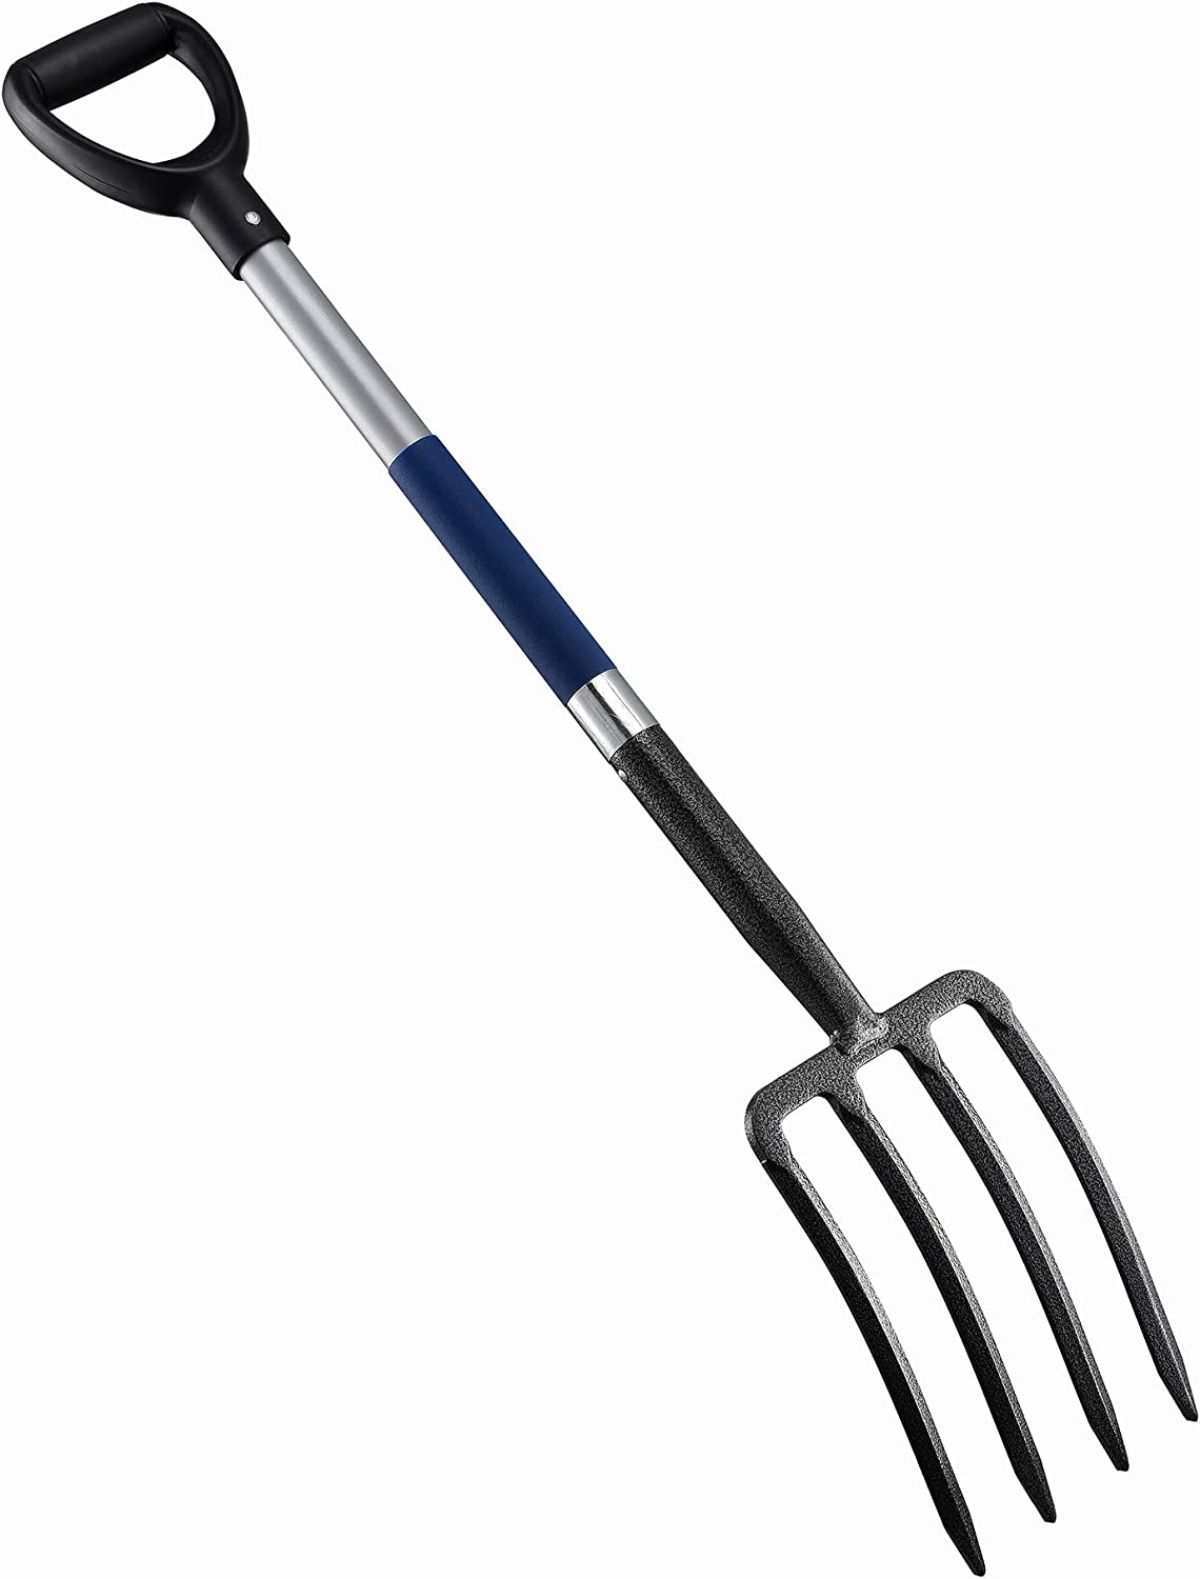 A four-pronged garden fork, an essential garden tool